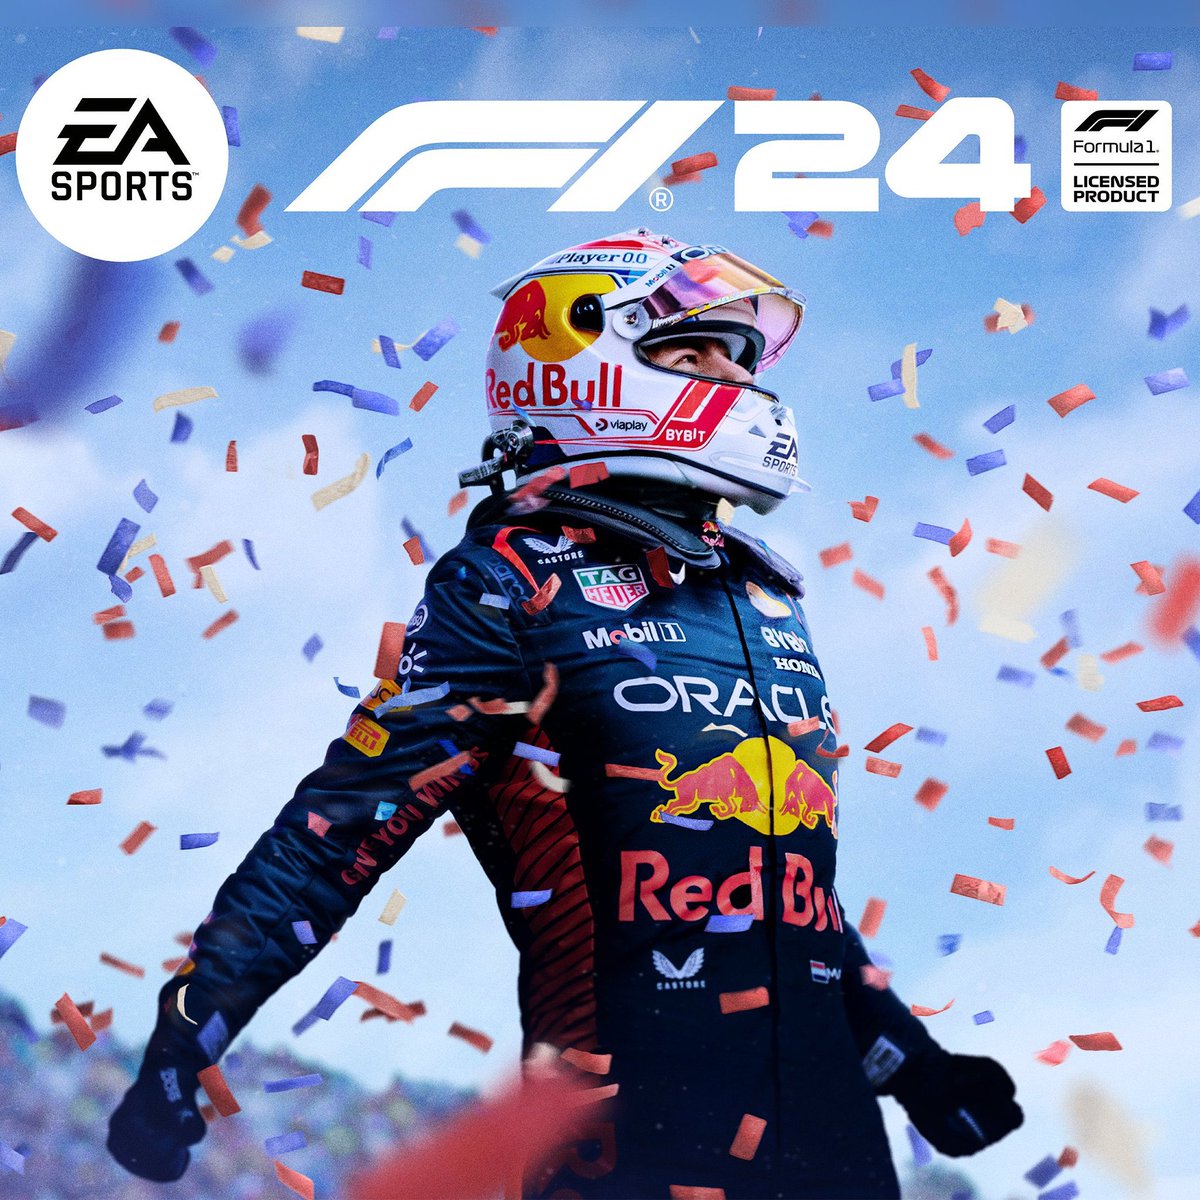 F1 24 Champions Edition oyun kapağı yayınlandı. Bu sene oyunda ciddi değişiklikler olmalı yoksa seri iyice dibe çakılacak.